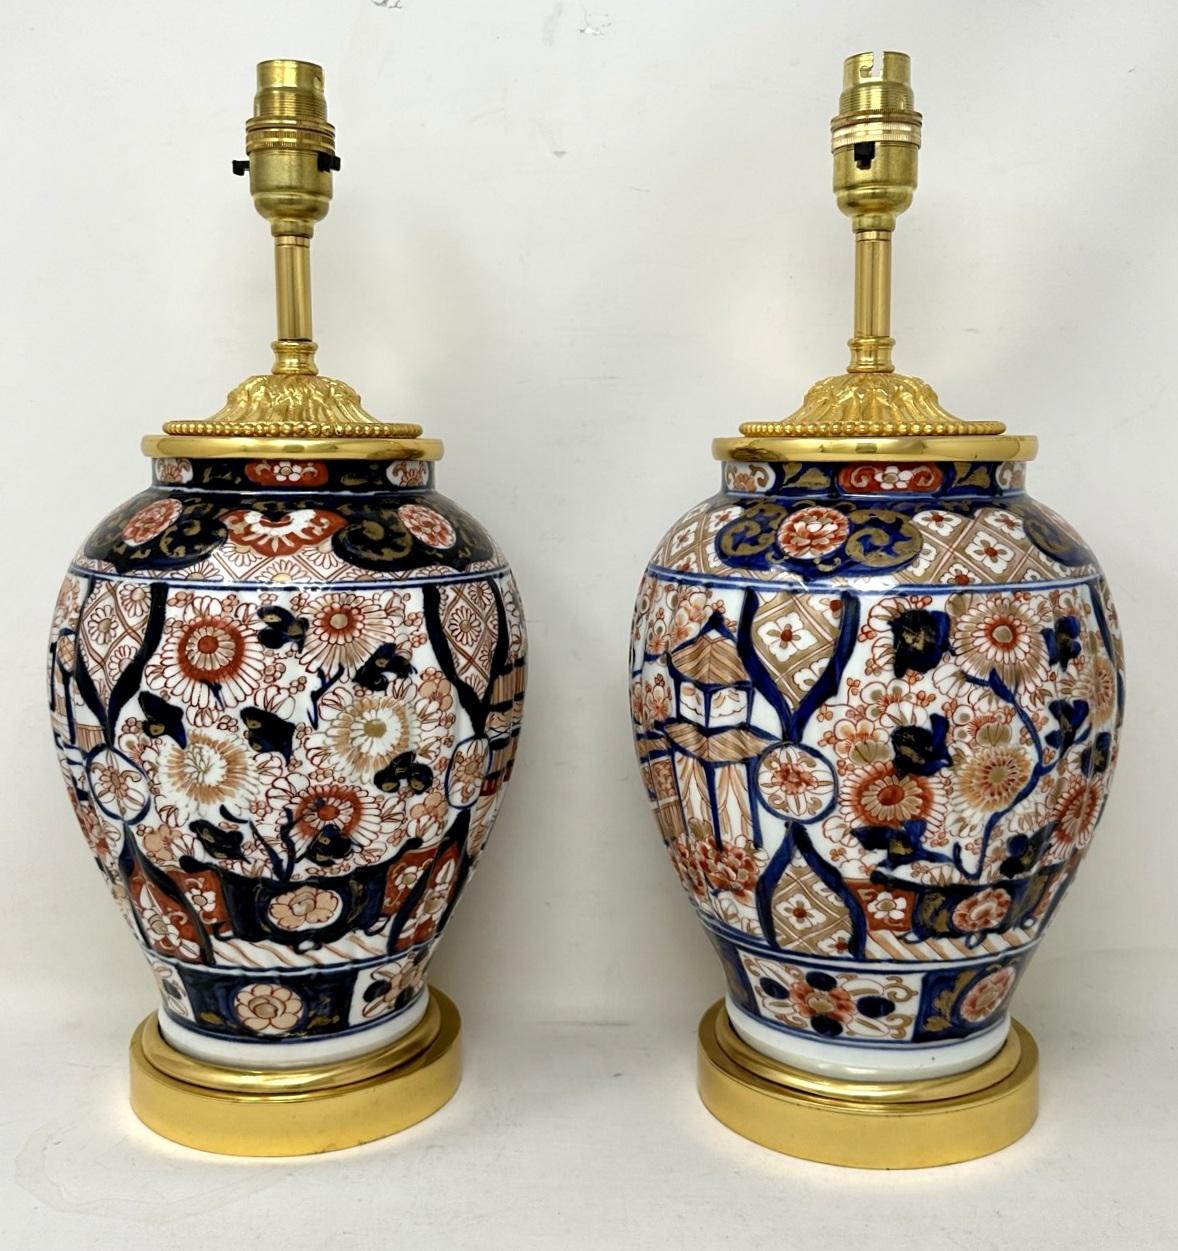 Superbe paire de vases traditionnels japonais en porcelaine de forme bulbeuse imari, de proportions moyennes à grandes, maintenant convertis en une paire de lampes de table électriques, complètes avec des bases circulaires à gradins en bronze doré